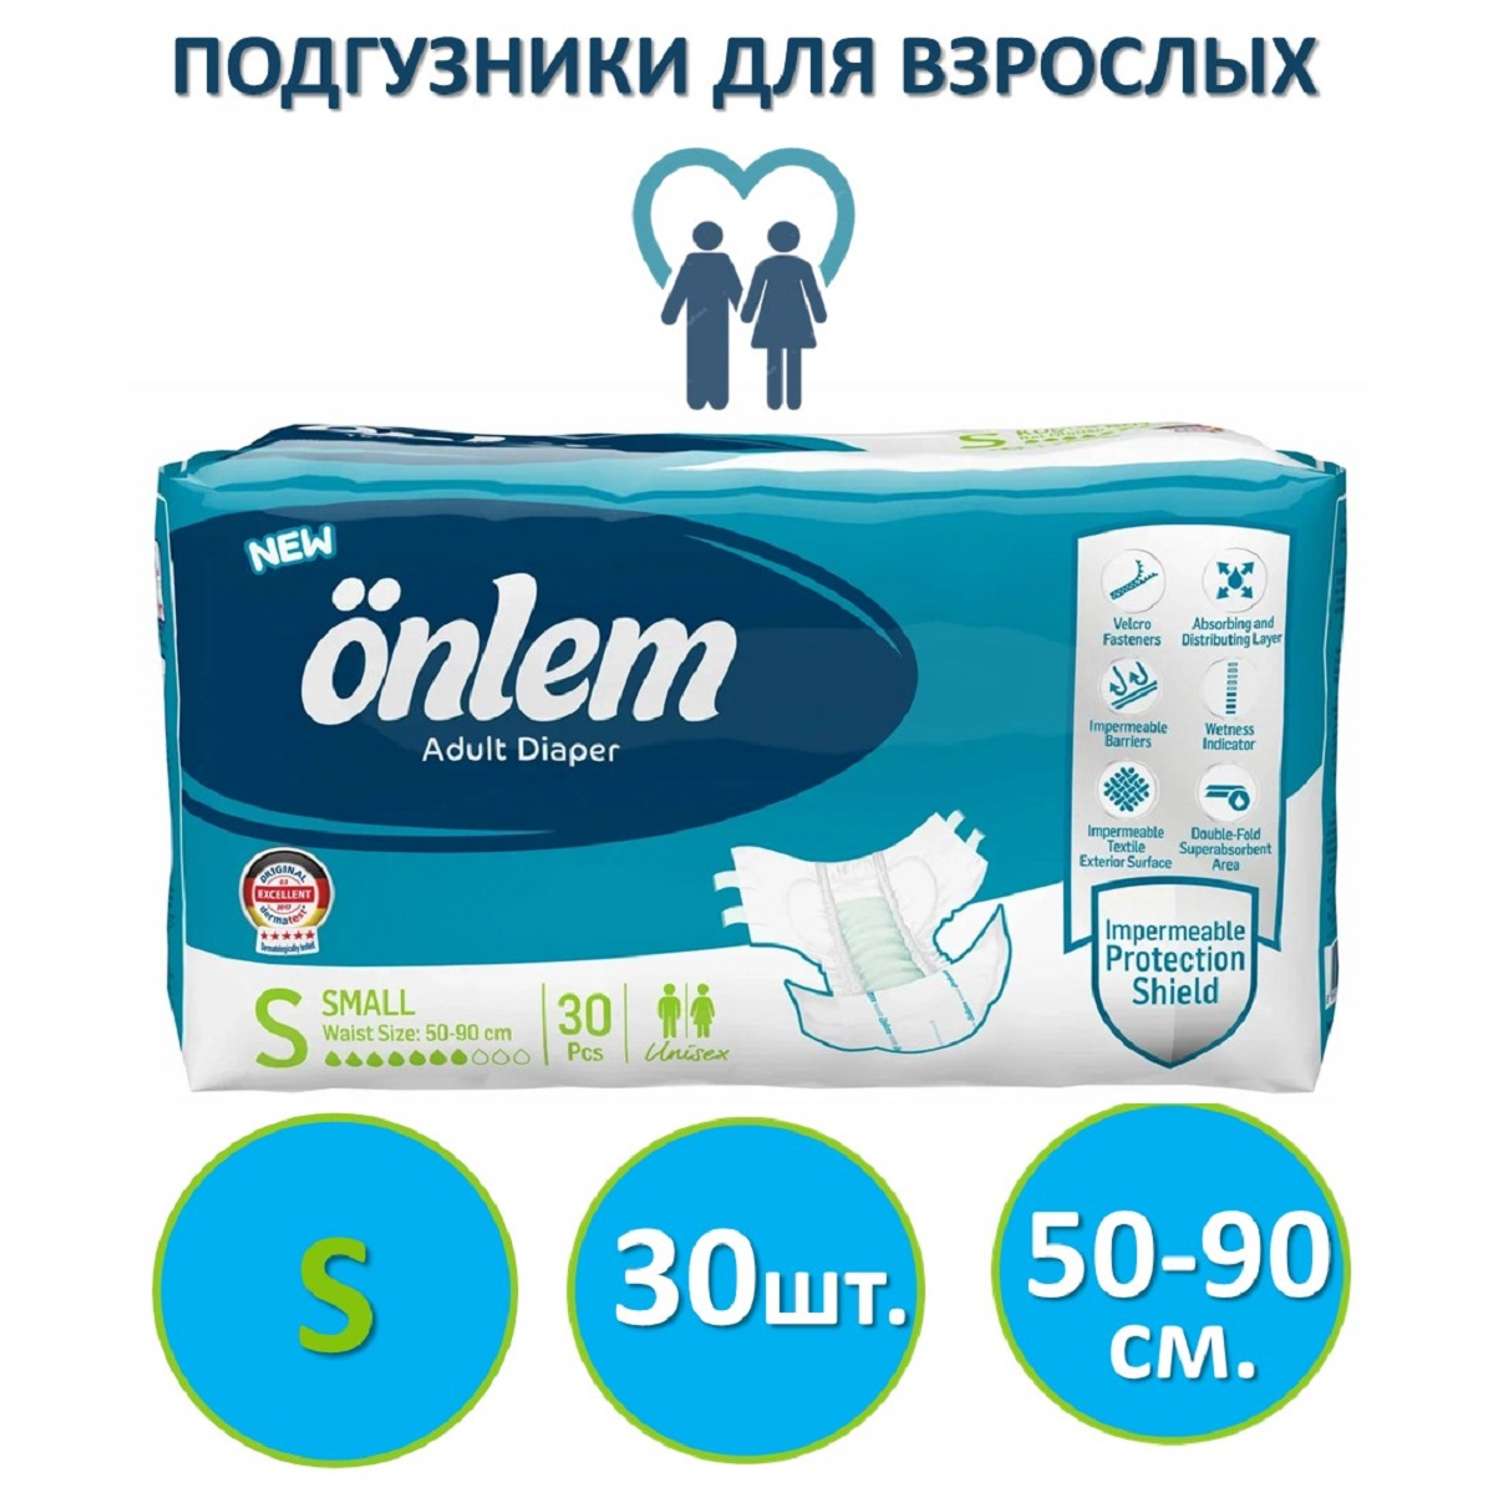 Подгузники для взрослых Onlem размер S (50-90cм.) 30 шт. в упаковке - фото 1